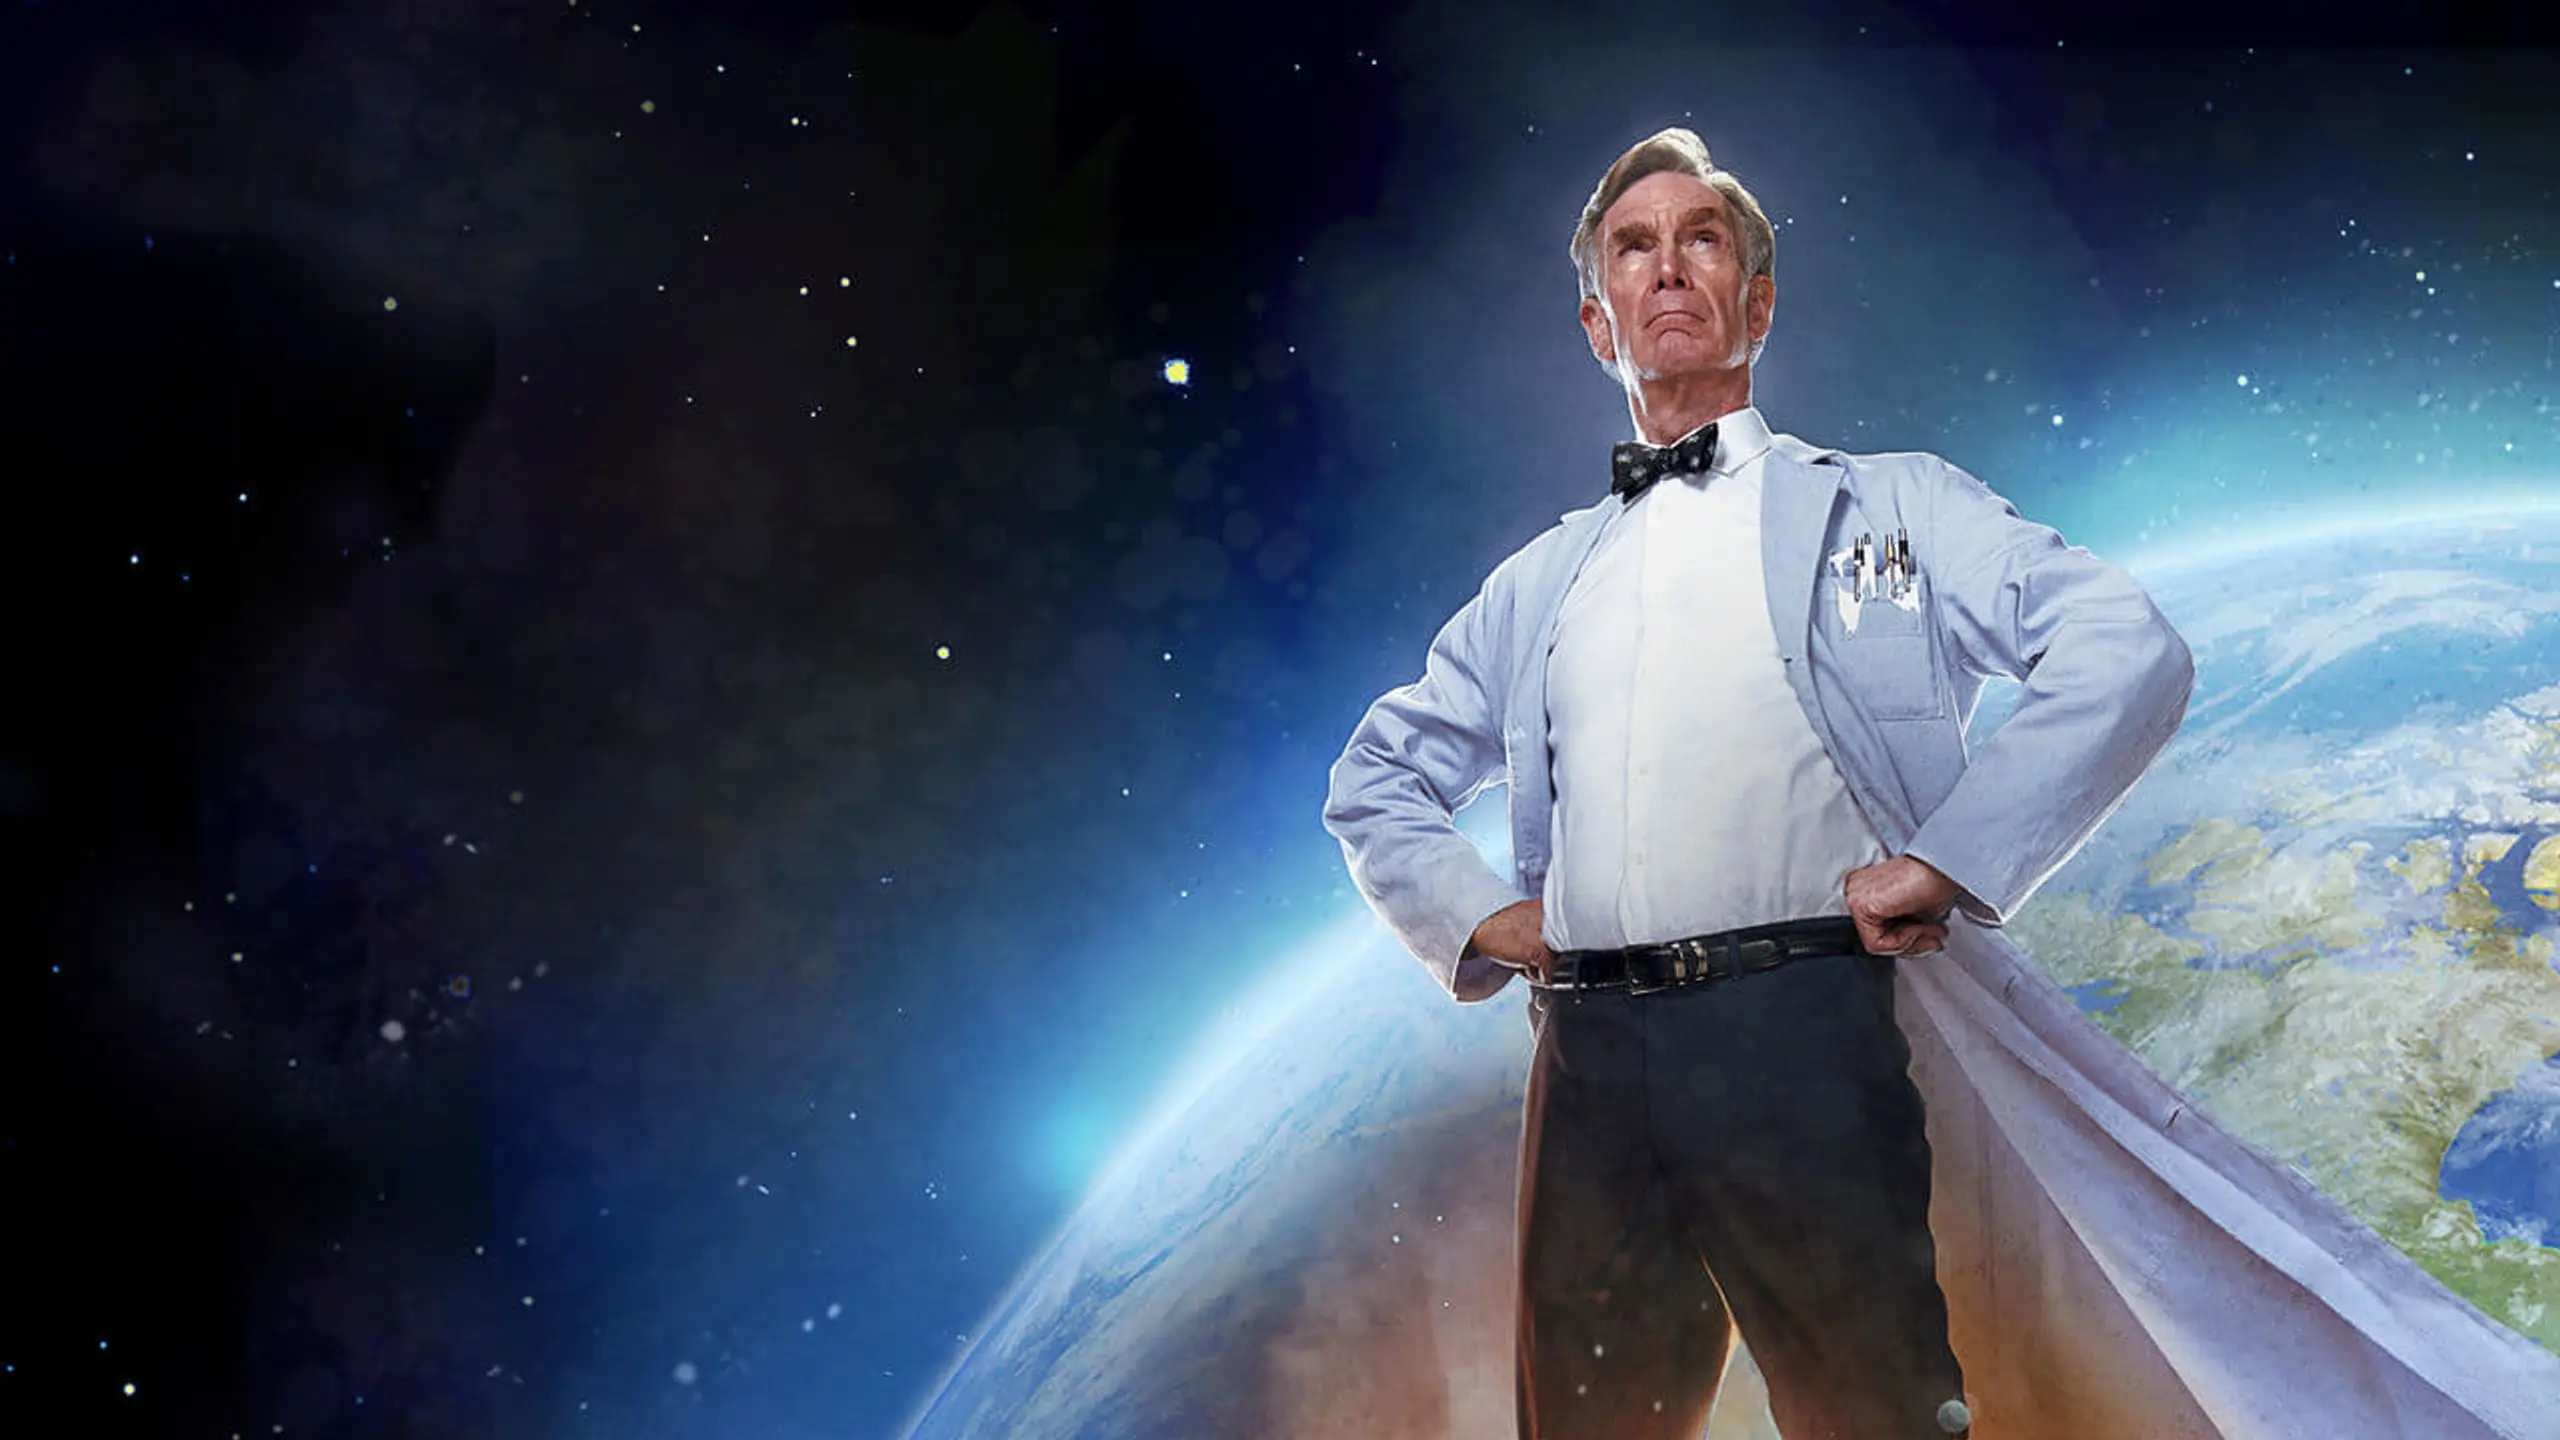 Bill Nye rettet die Welt